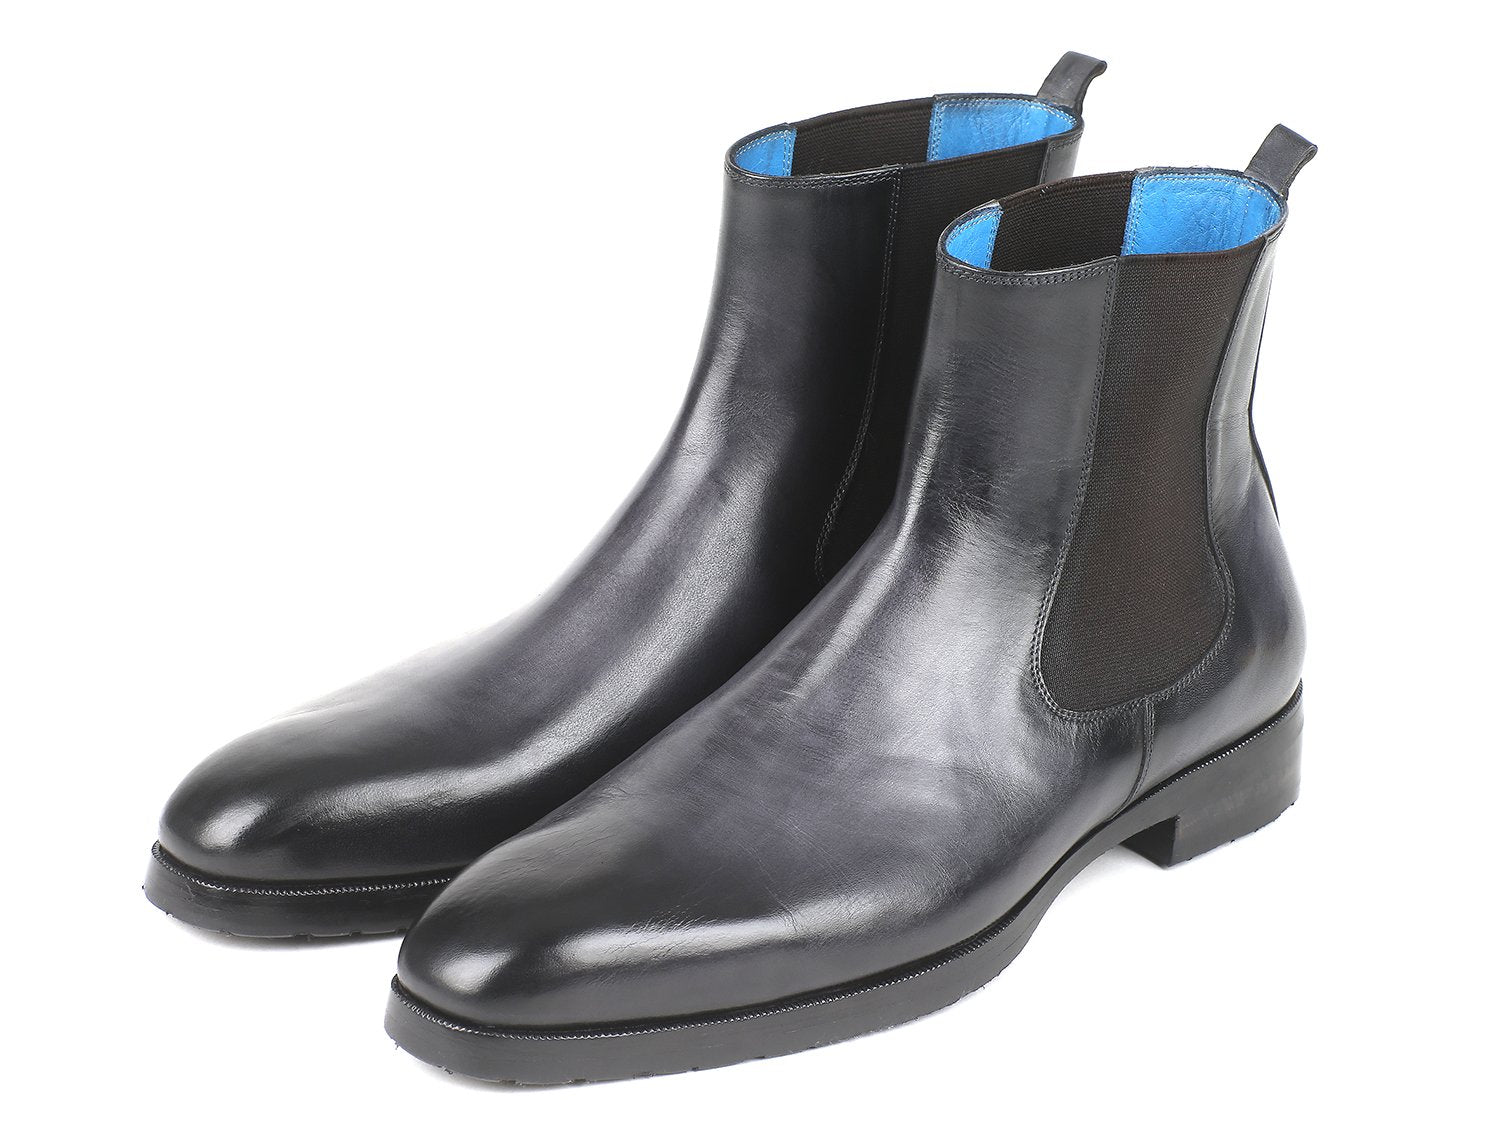 Paul Parkman Black & Gray Chelsea Boots - BT661BLK